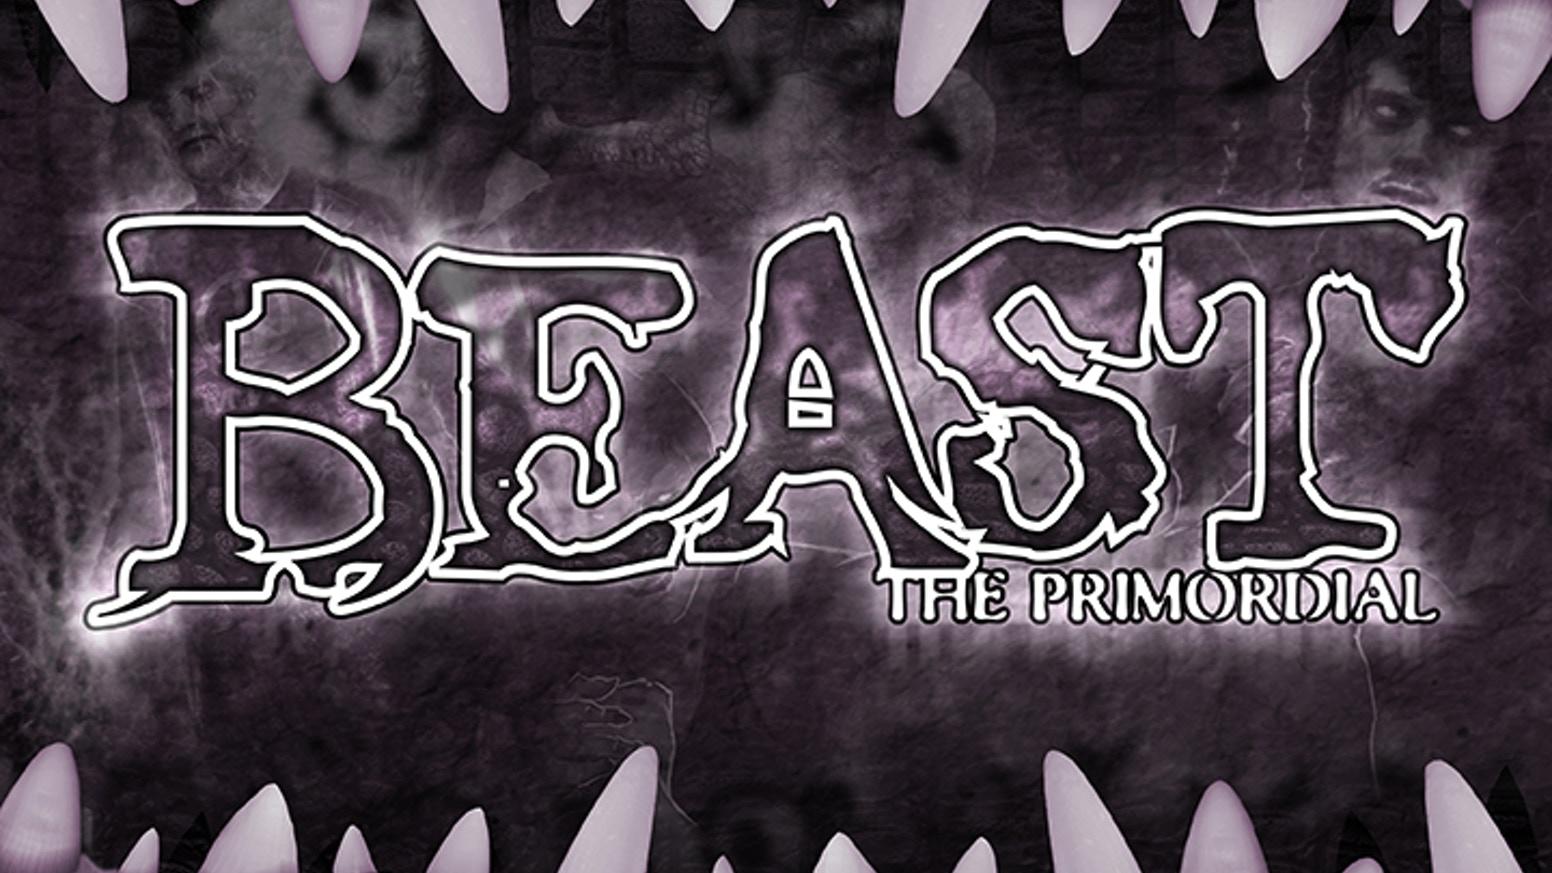 Maggiori informazioni riguardo "Beast: the Primordial"